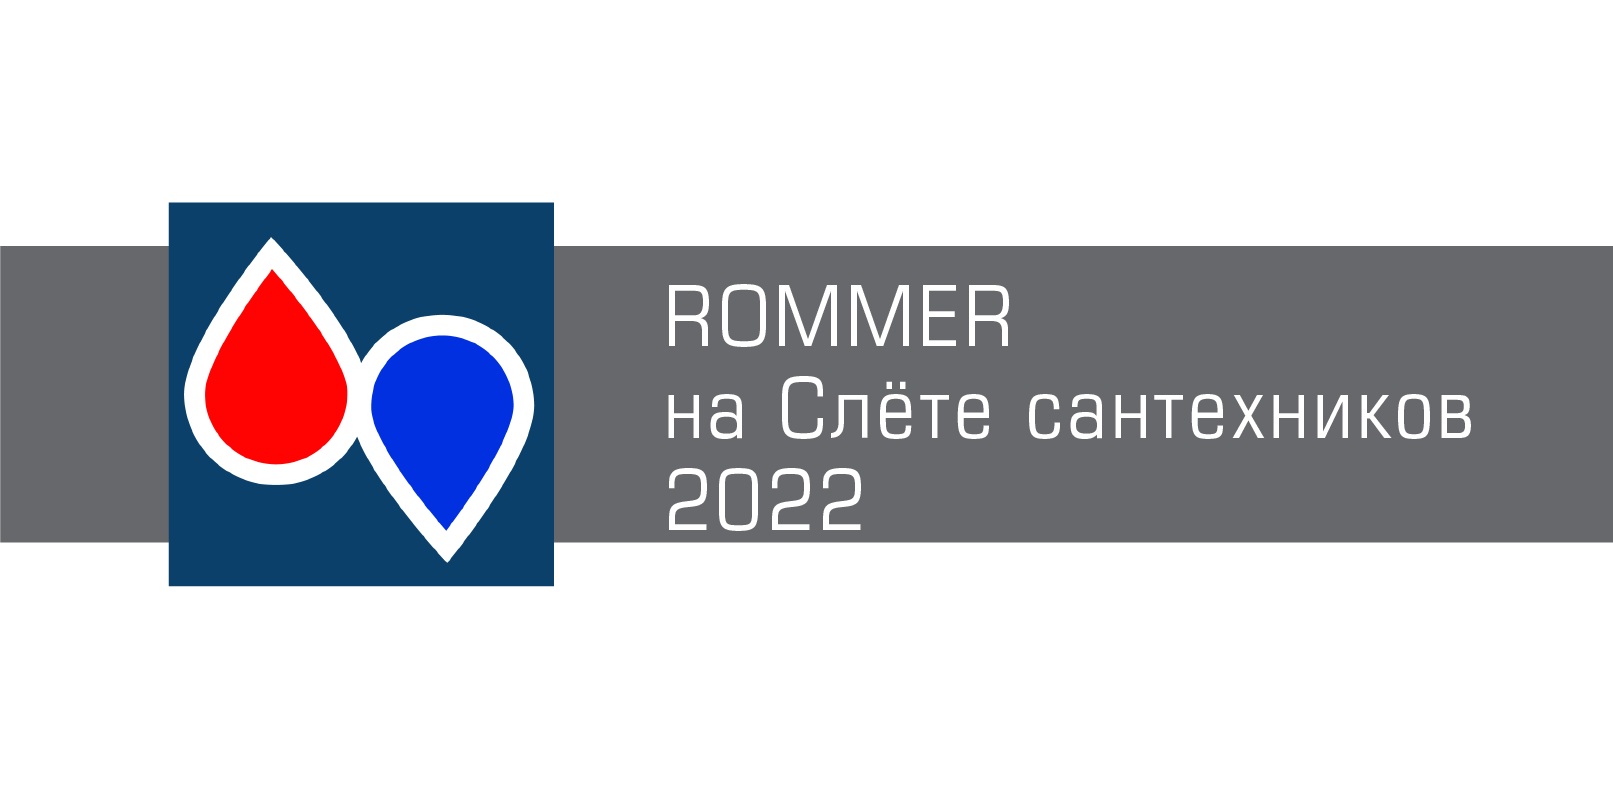 ROMMER — на Слёте сантехников-2022